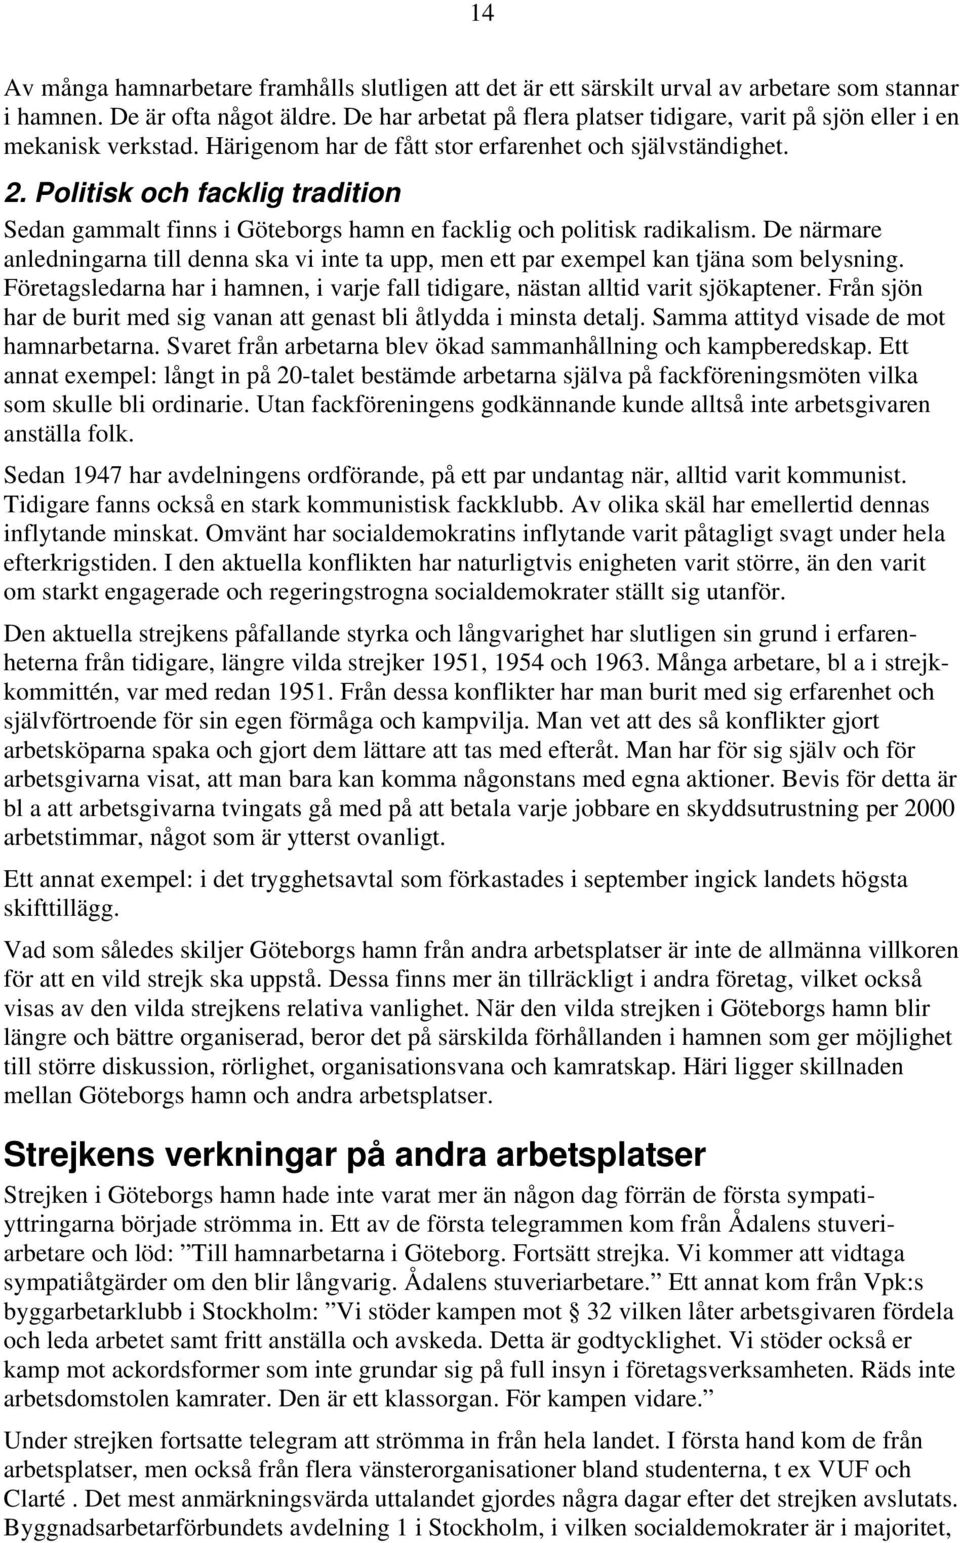 Politisk och facklig tradition Sedan gammalt finns i Göteborgs hamn en facklig och politisk radikalism.